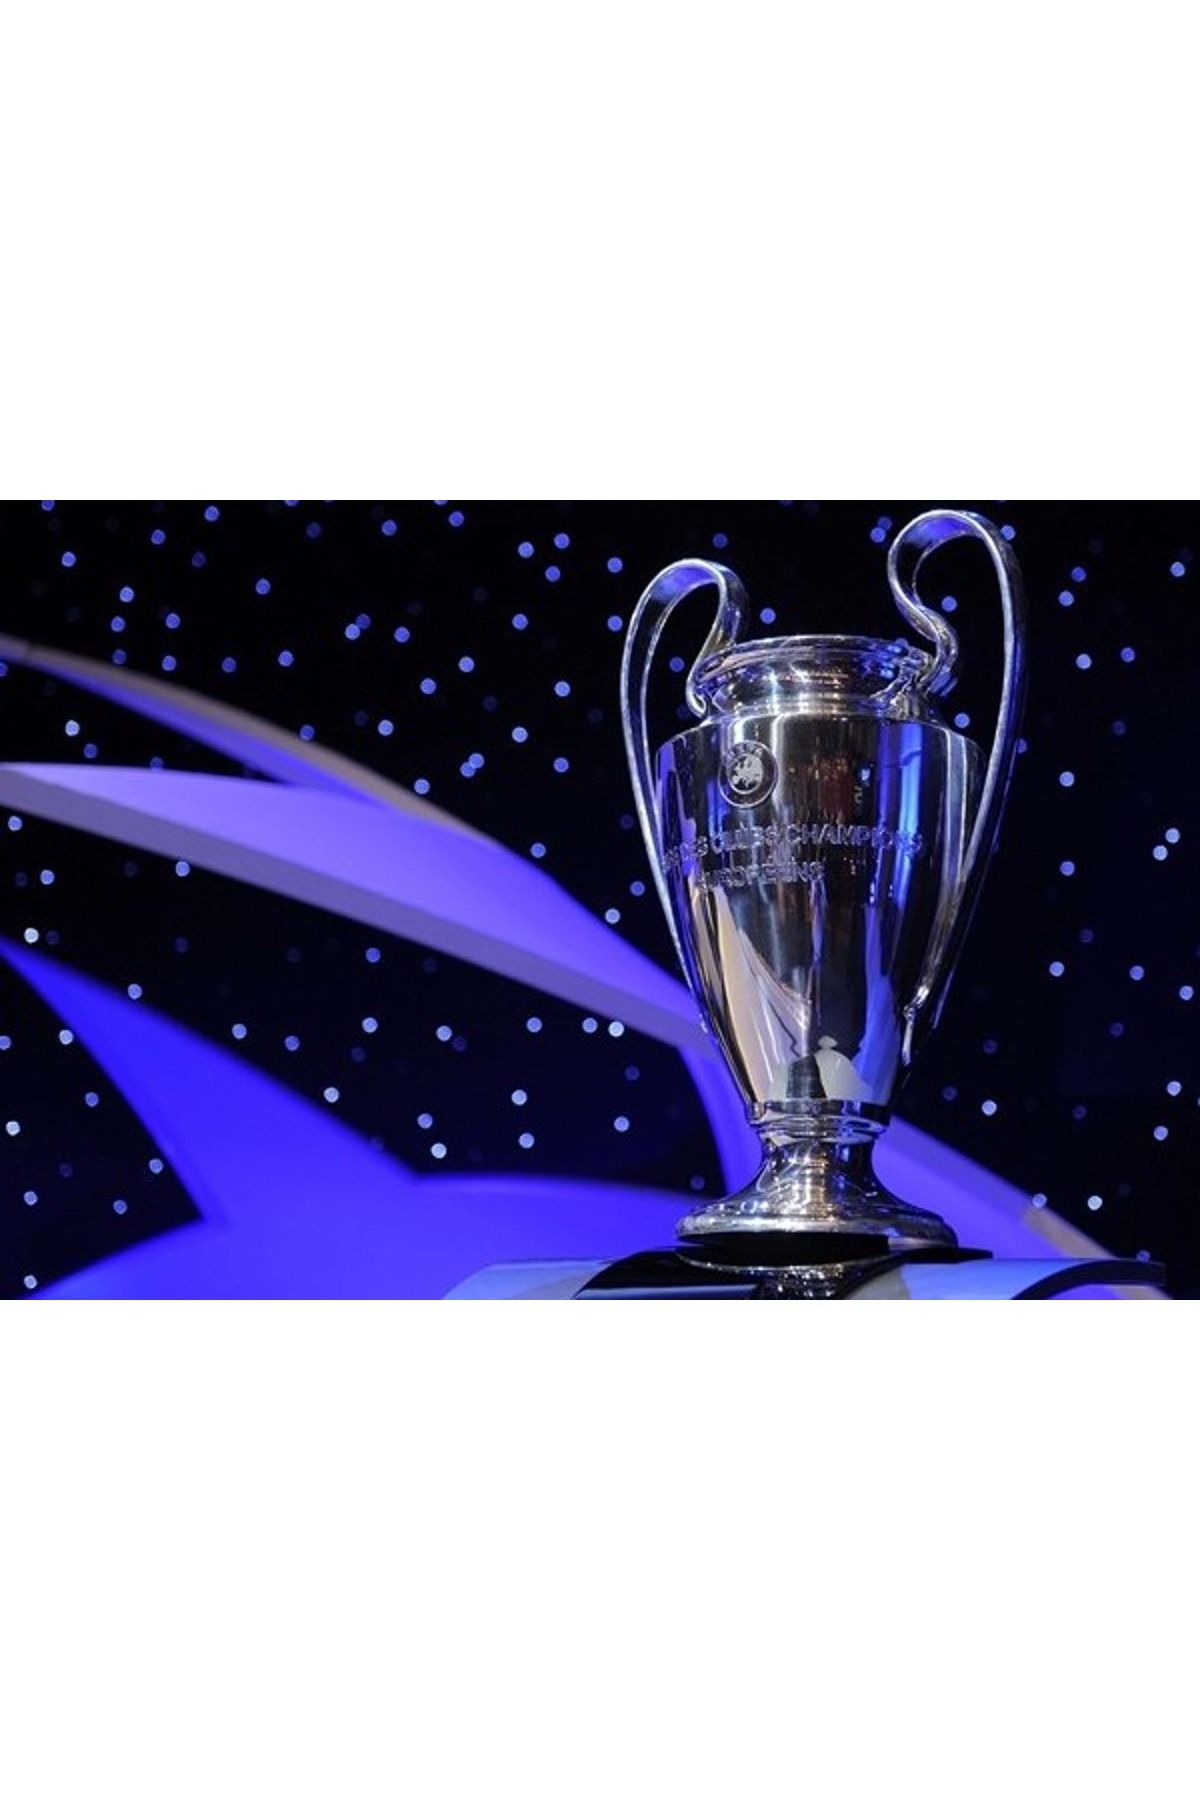 Genel Markalar KOPYA - UEFA ŞAMPİYONLAR LİGİ KUPASI 20 cm